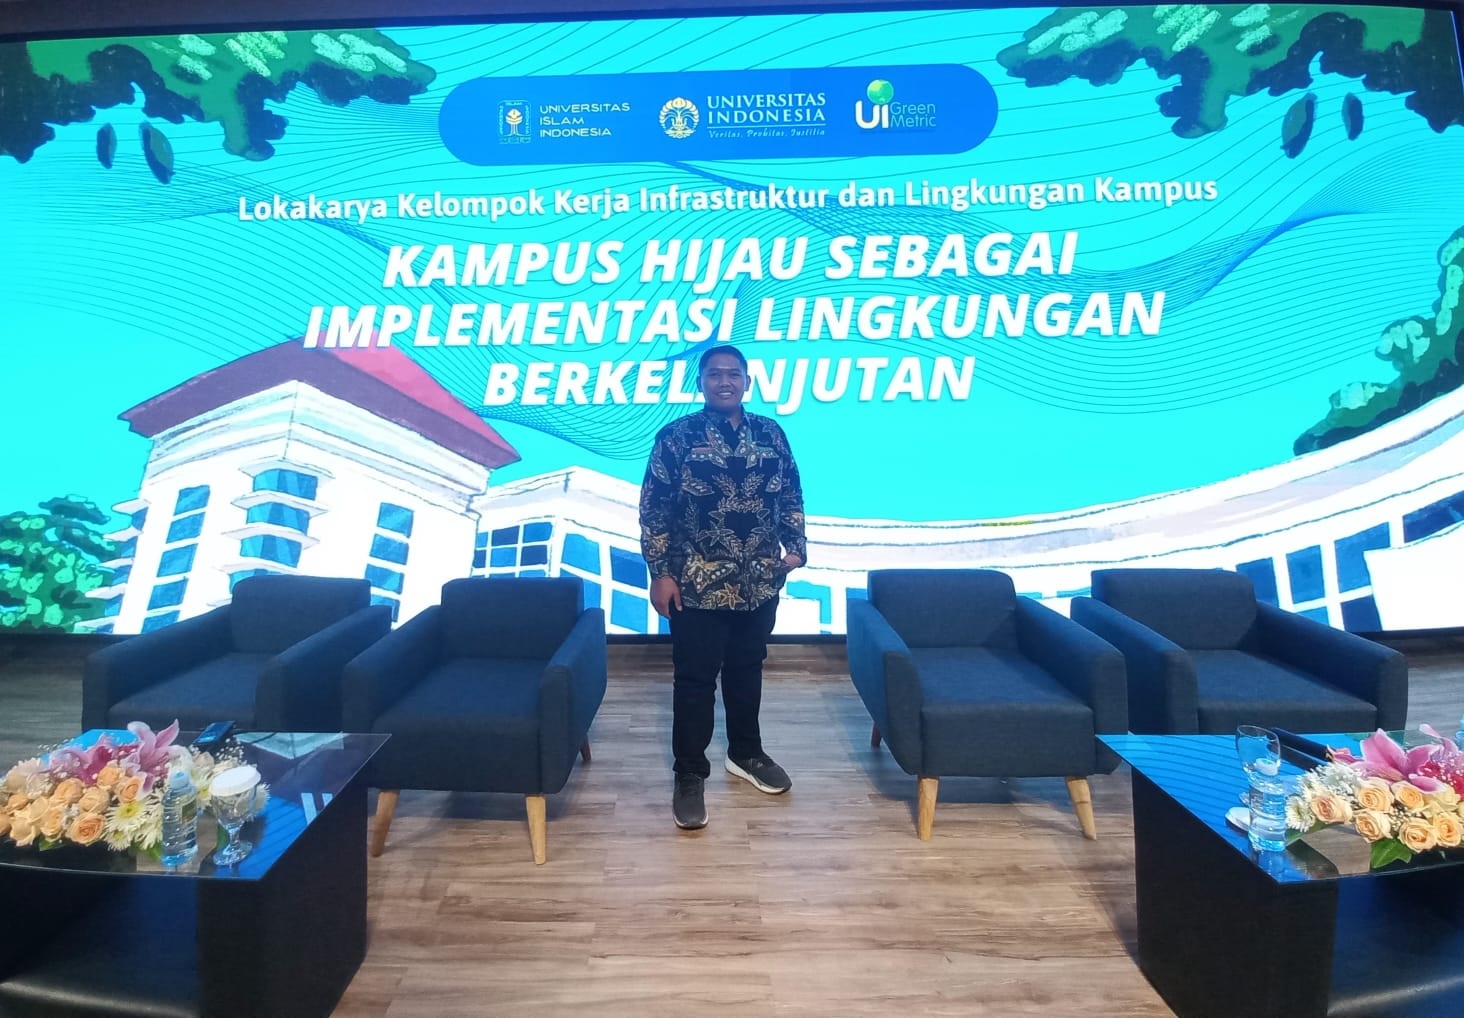 UIN SUTHA Jambi Ikut Serta Dalam Lokakarya UI GreenMetric World University Rankings di Yogyakarta   